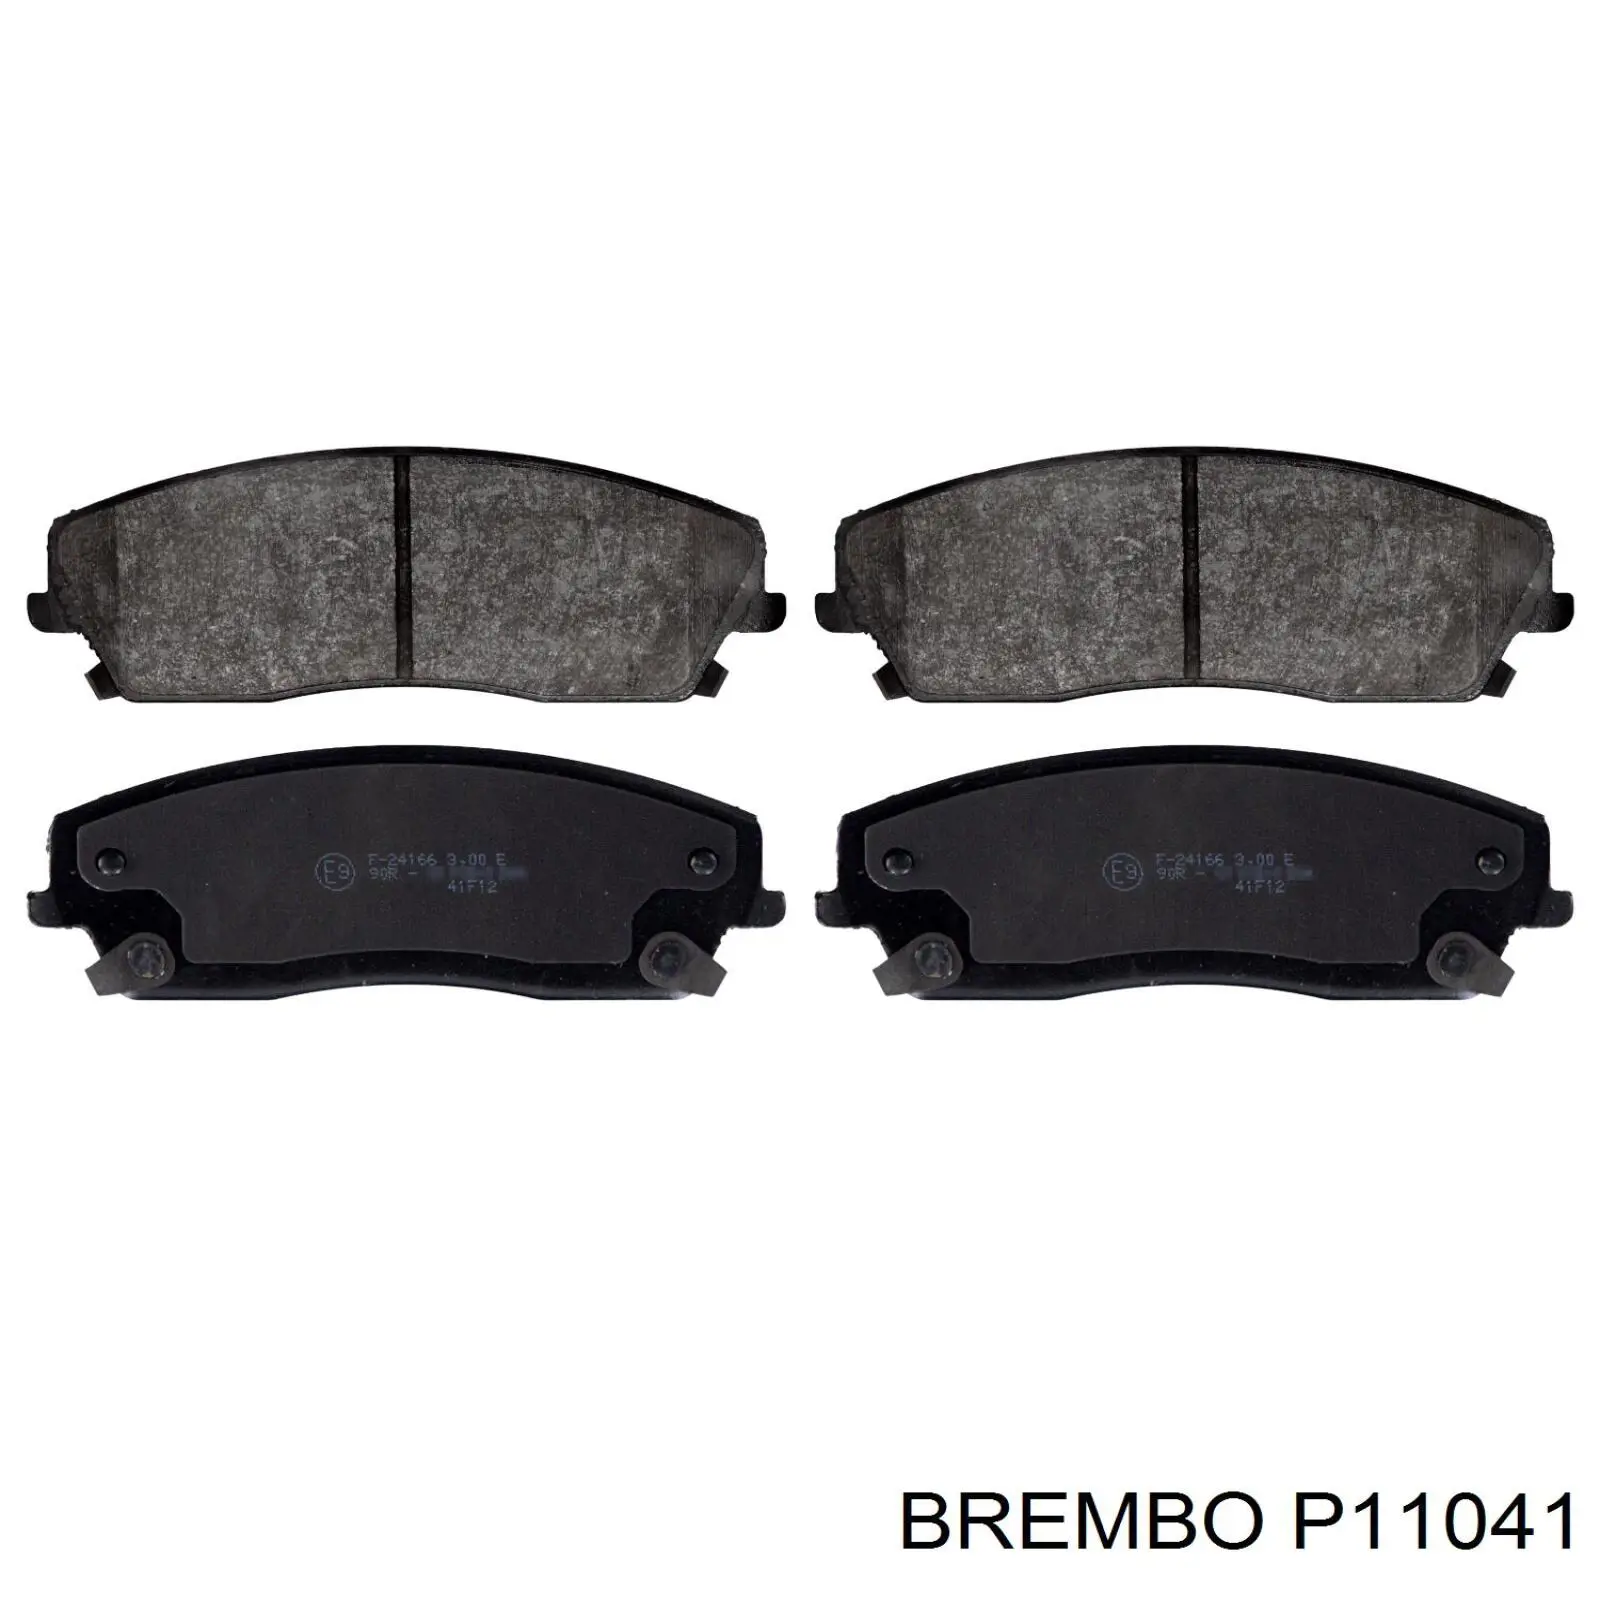 P11041 Brembo передние тормозные колодки